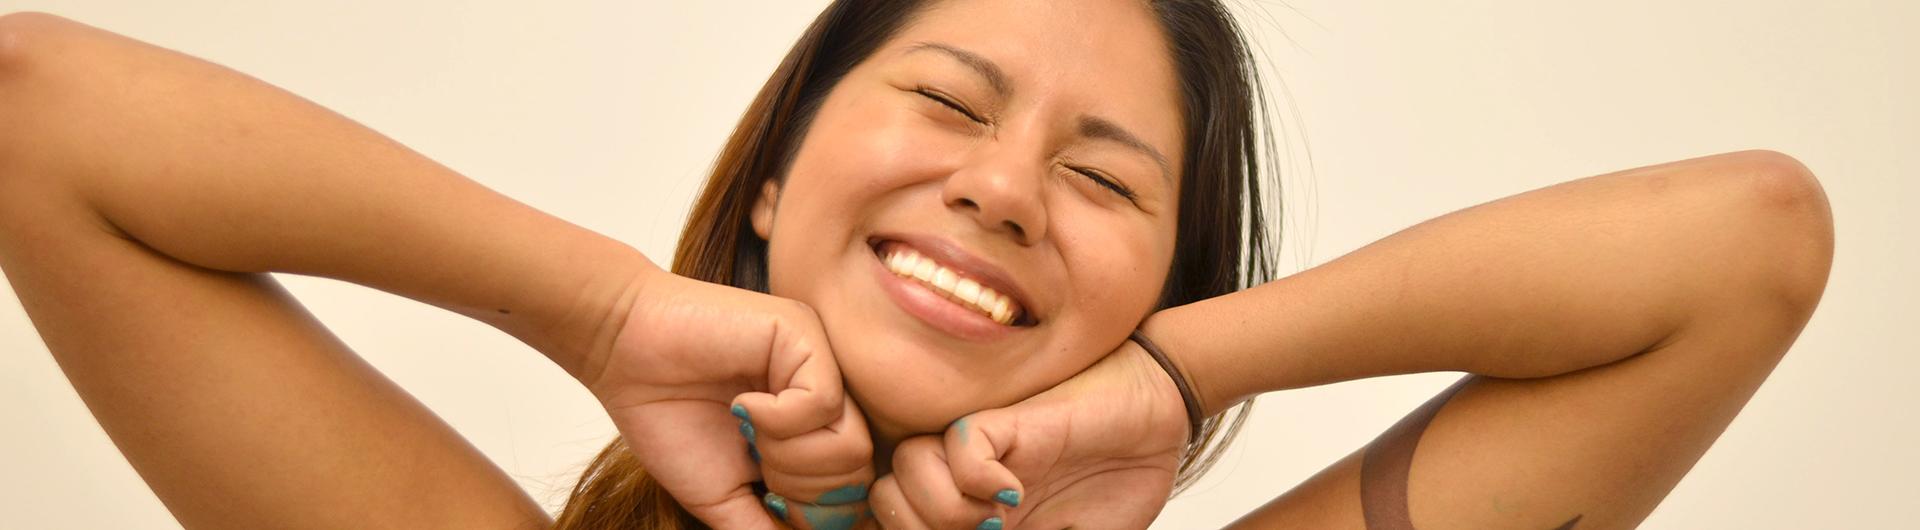 Nohemi Gonzalez with her giant smile